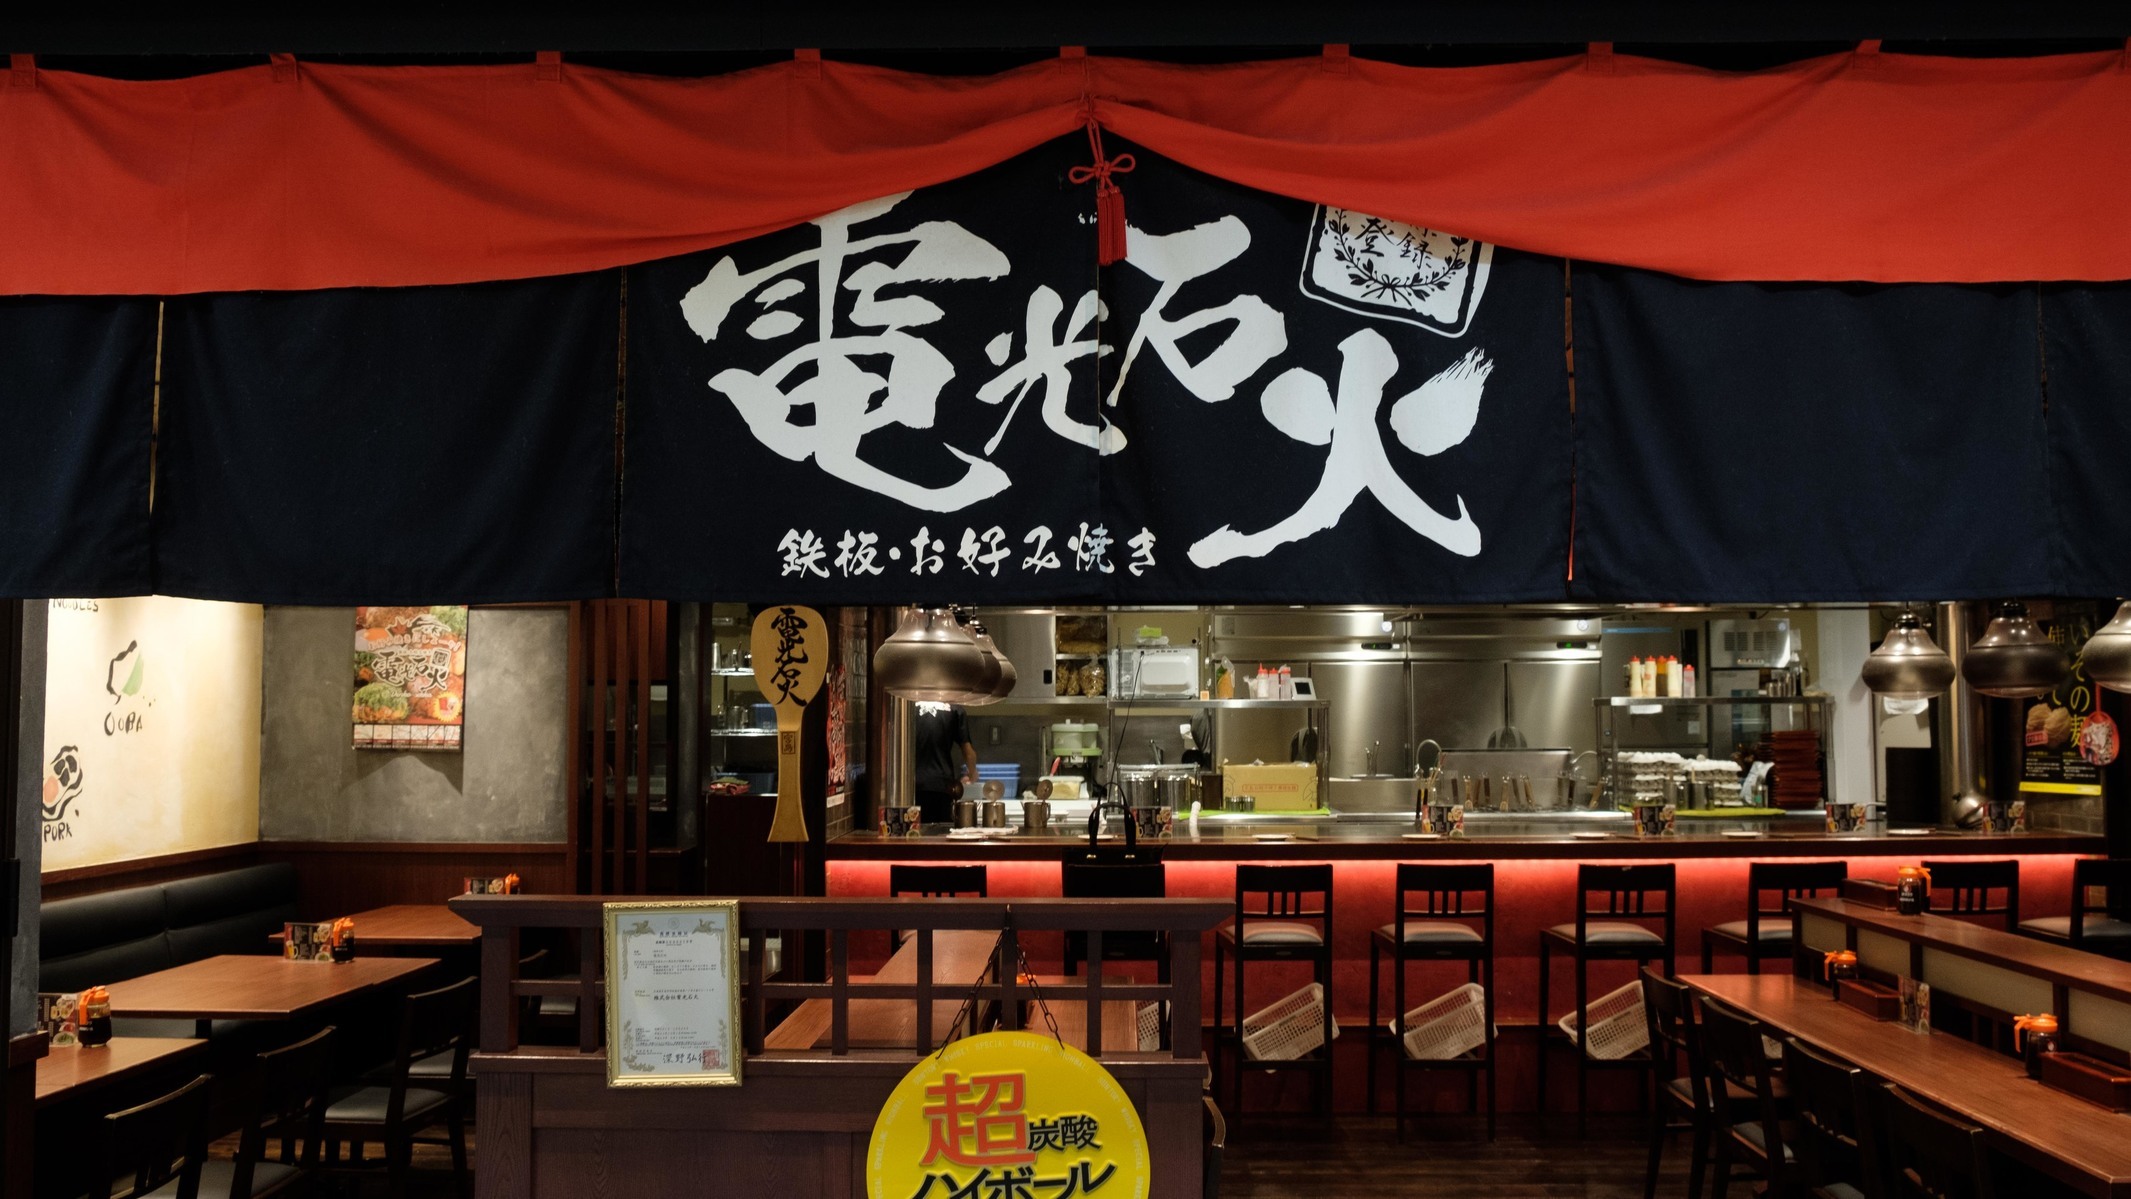 食べログ3 5以上 東京駅のおすすめ居酒屋30選 21年最新 めしレポ